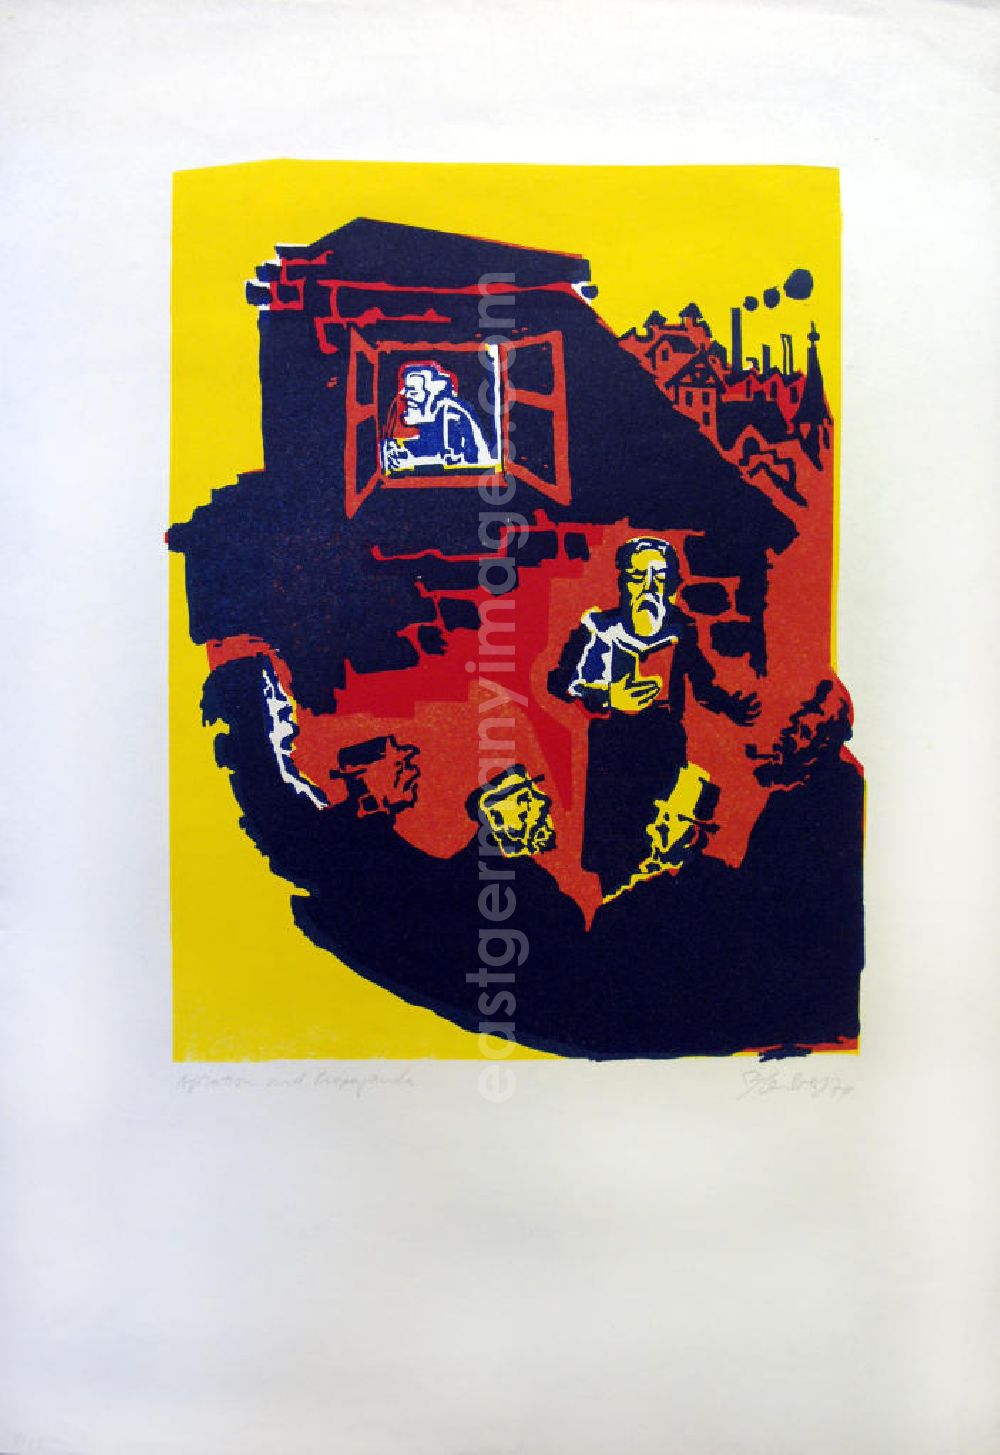 GDR image archive: Berlin - Grafik von Herbert Sandberg Agitation und Propaganda aus dem Zyklus Die farbige Wahrheit mit 10 Farbdrucken (Linol- und Decelithschnitte) aus dem Jahr 1974, 28,9x37,2cm handsigniert, 8/2